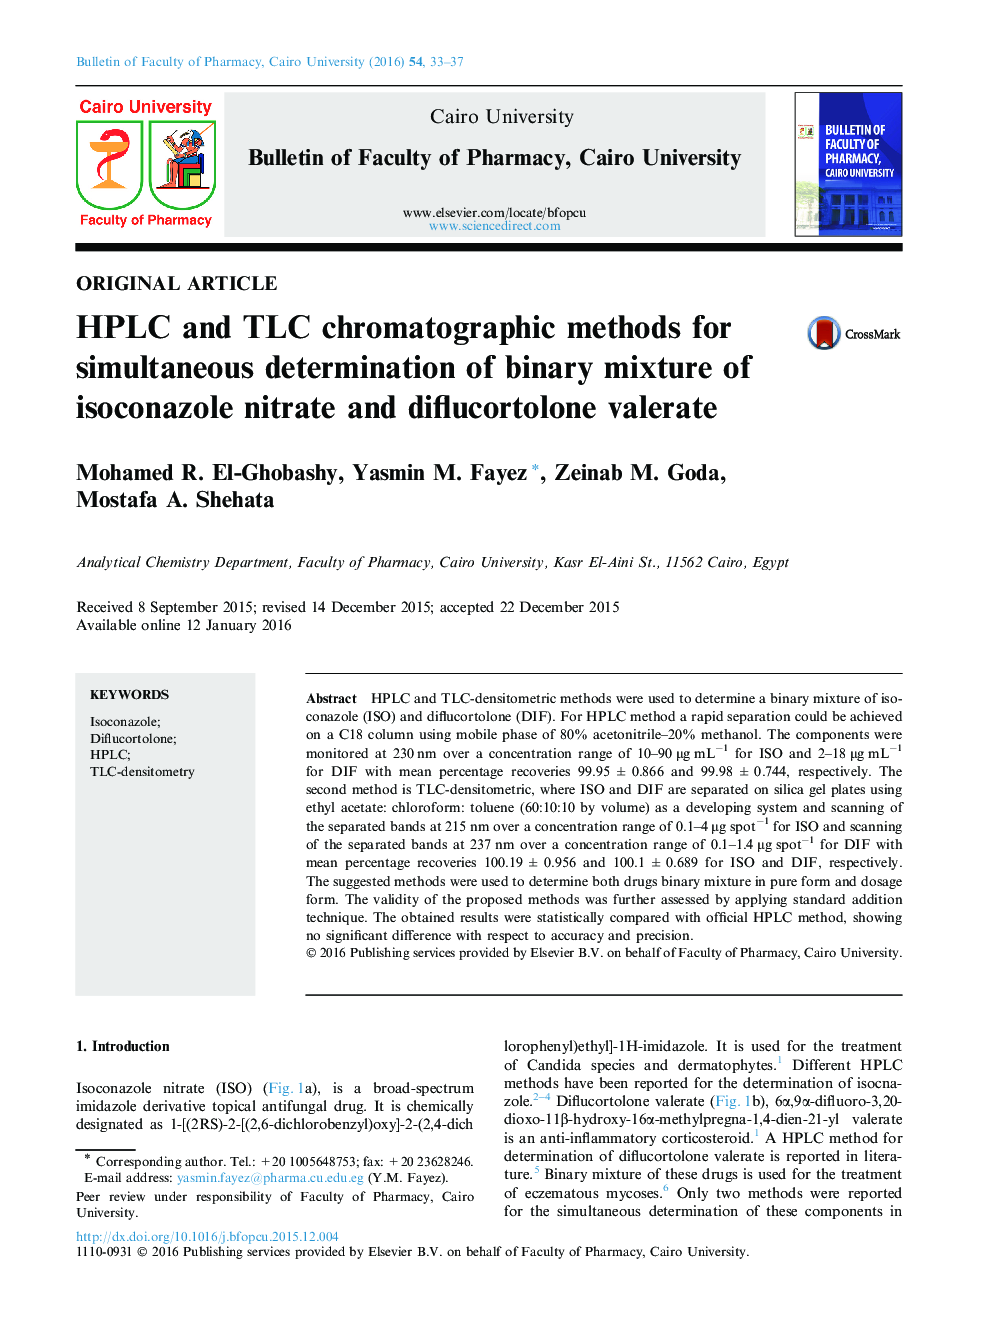 روش های کروماتوگرافی HPLC و TLC برای اندازه گیری همزمان مخلوط های دوتایی از نیترات isoconazole و والرات diflucortolone